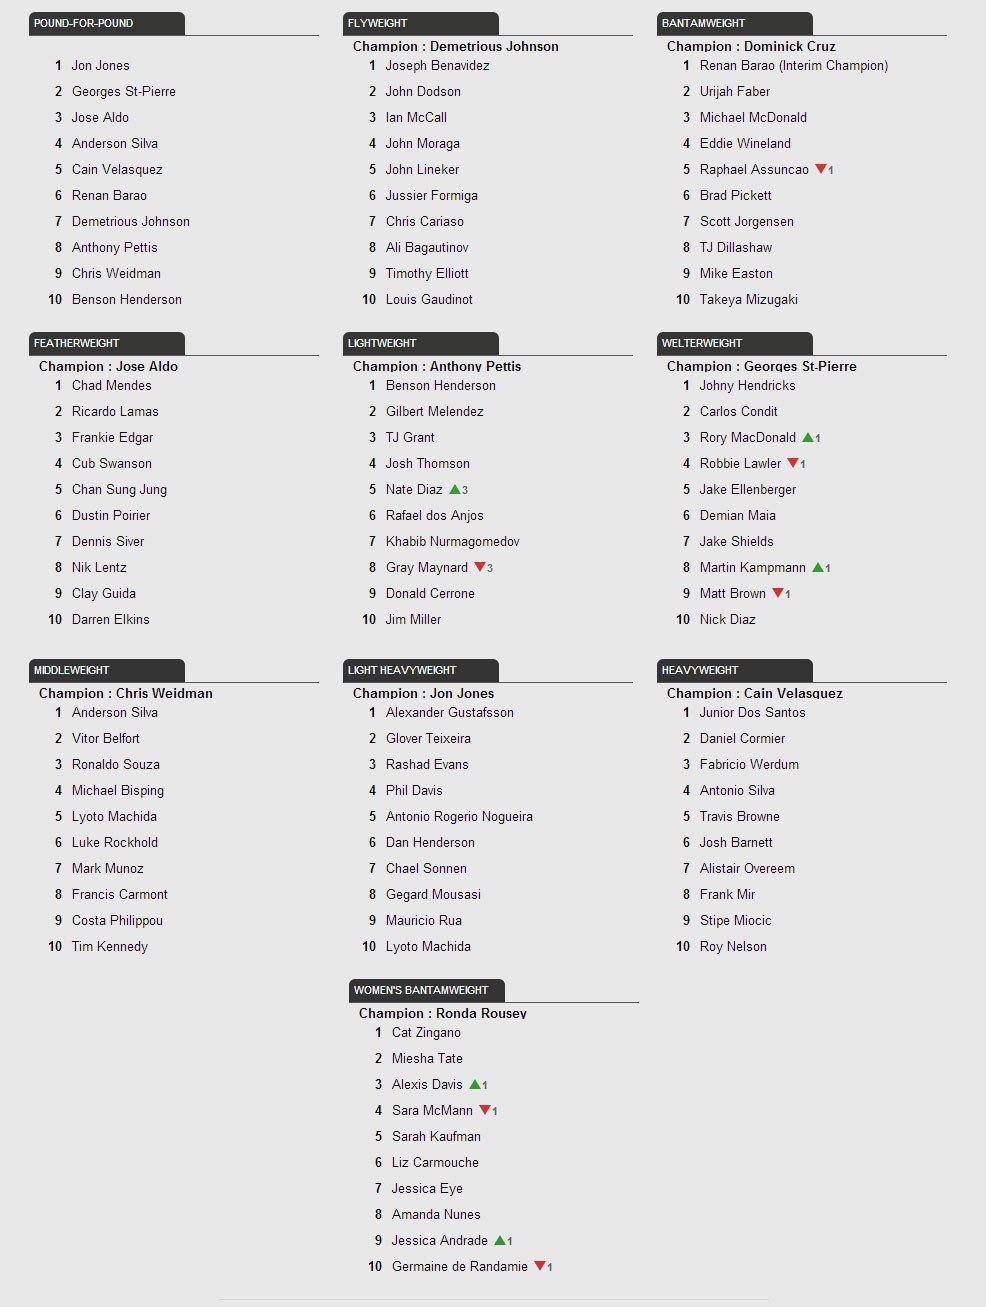 Ranking do UFC - 3 DEZEMBRO 2013 (Foto: Reprodução / Site UFC)